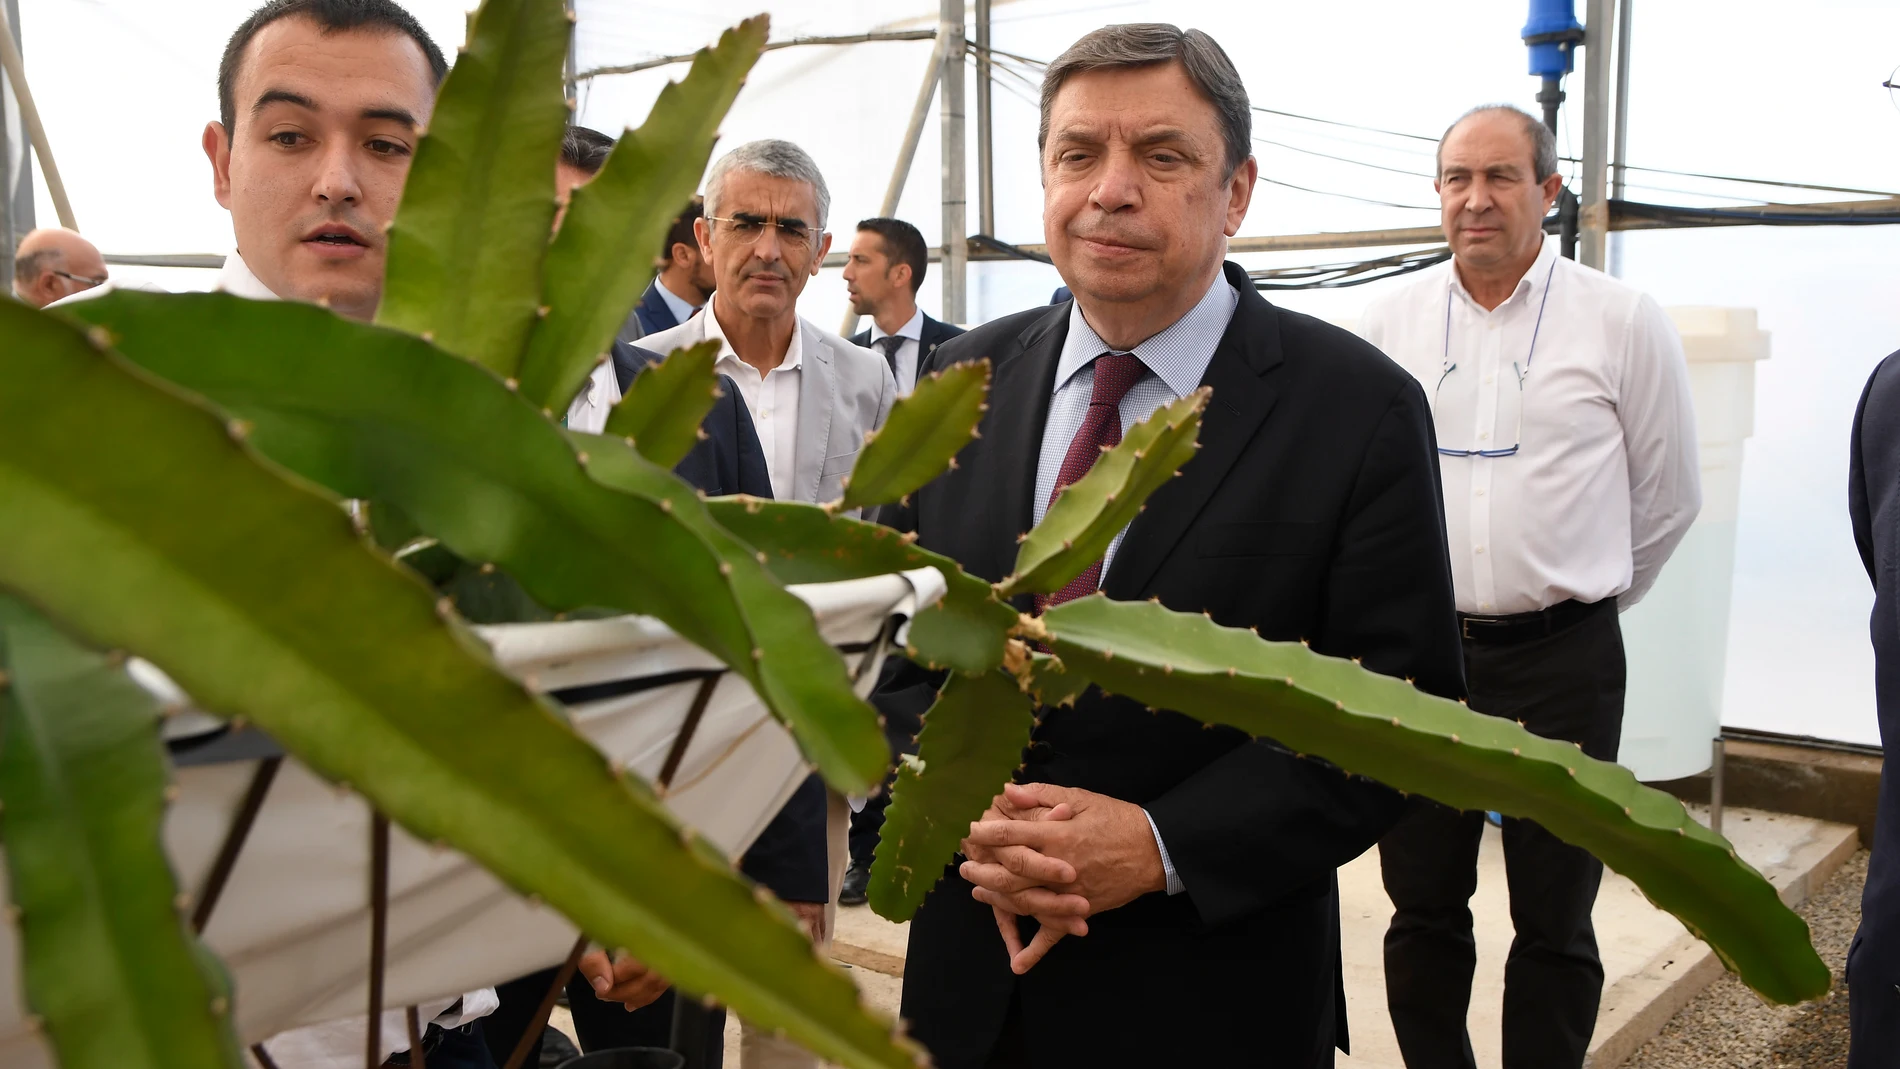 El ministro de Agricultura, Pesca y Alimentación, Luis Planas, durante la visita realizada esta semana a El Ejido (Almería) a la Estación Experimental "Las Palmerillas" de Cajamar